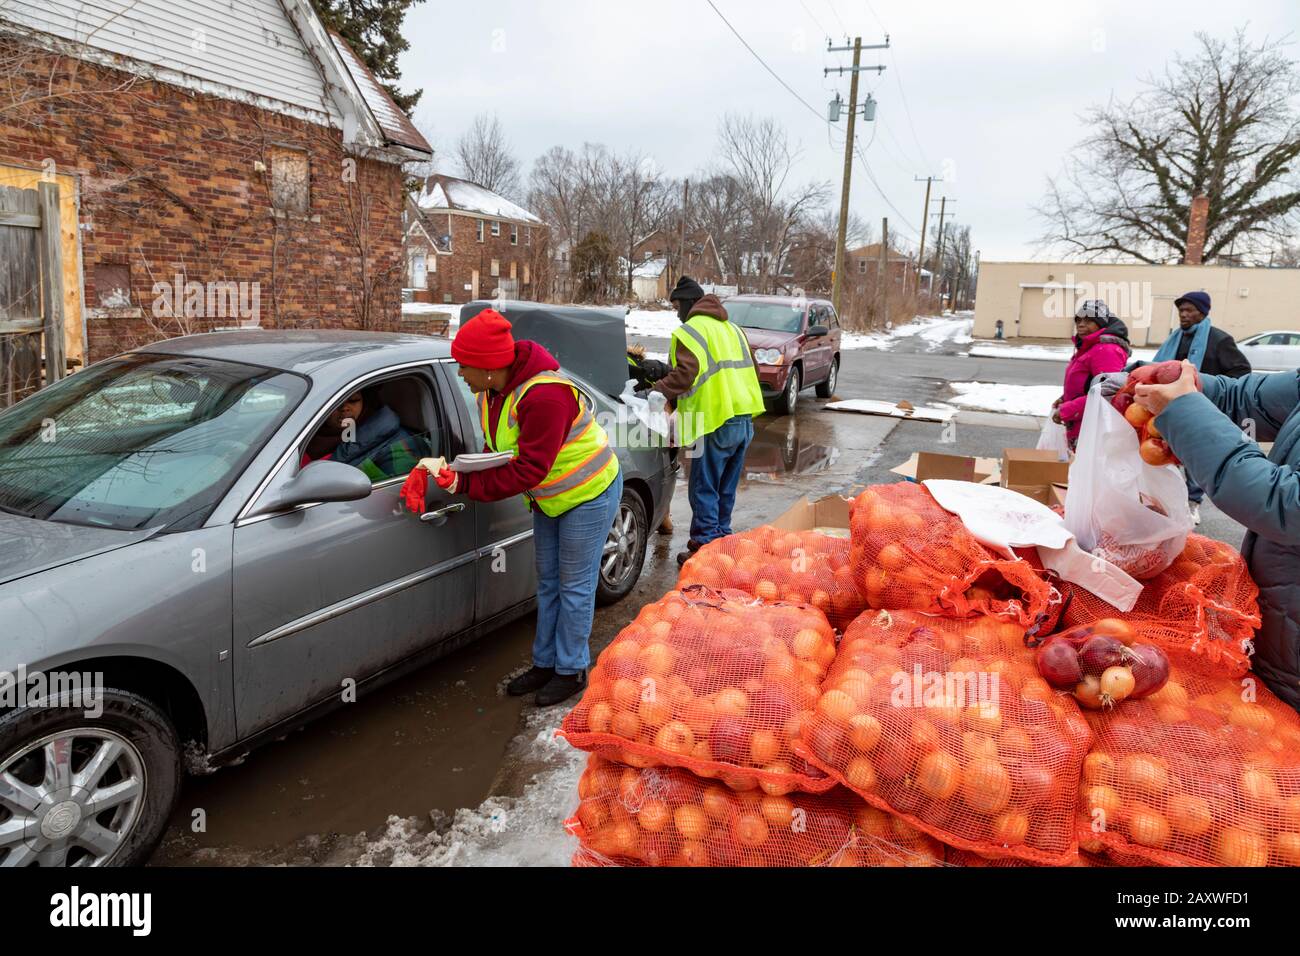 Detroit, Michigan - Freiwillige der Morningside Community Organisation verteilen Lebensmittel an Einwohner ihres östlichen Viertels. Die Lebensmittel Stockfoto